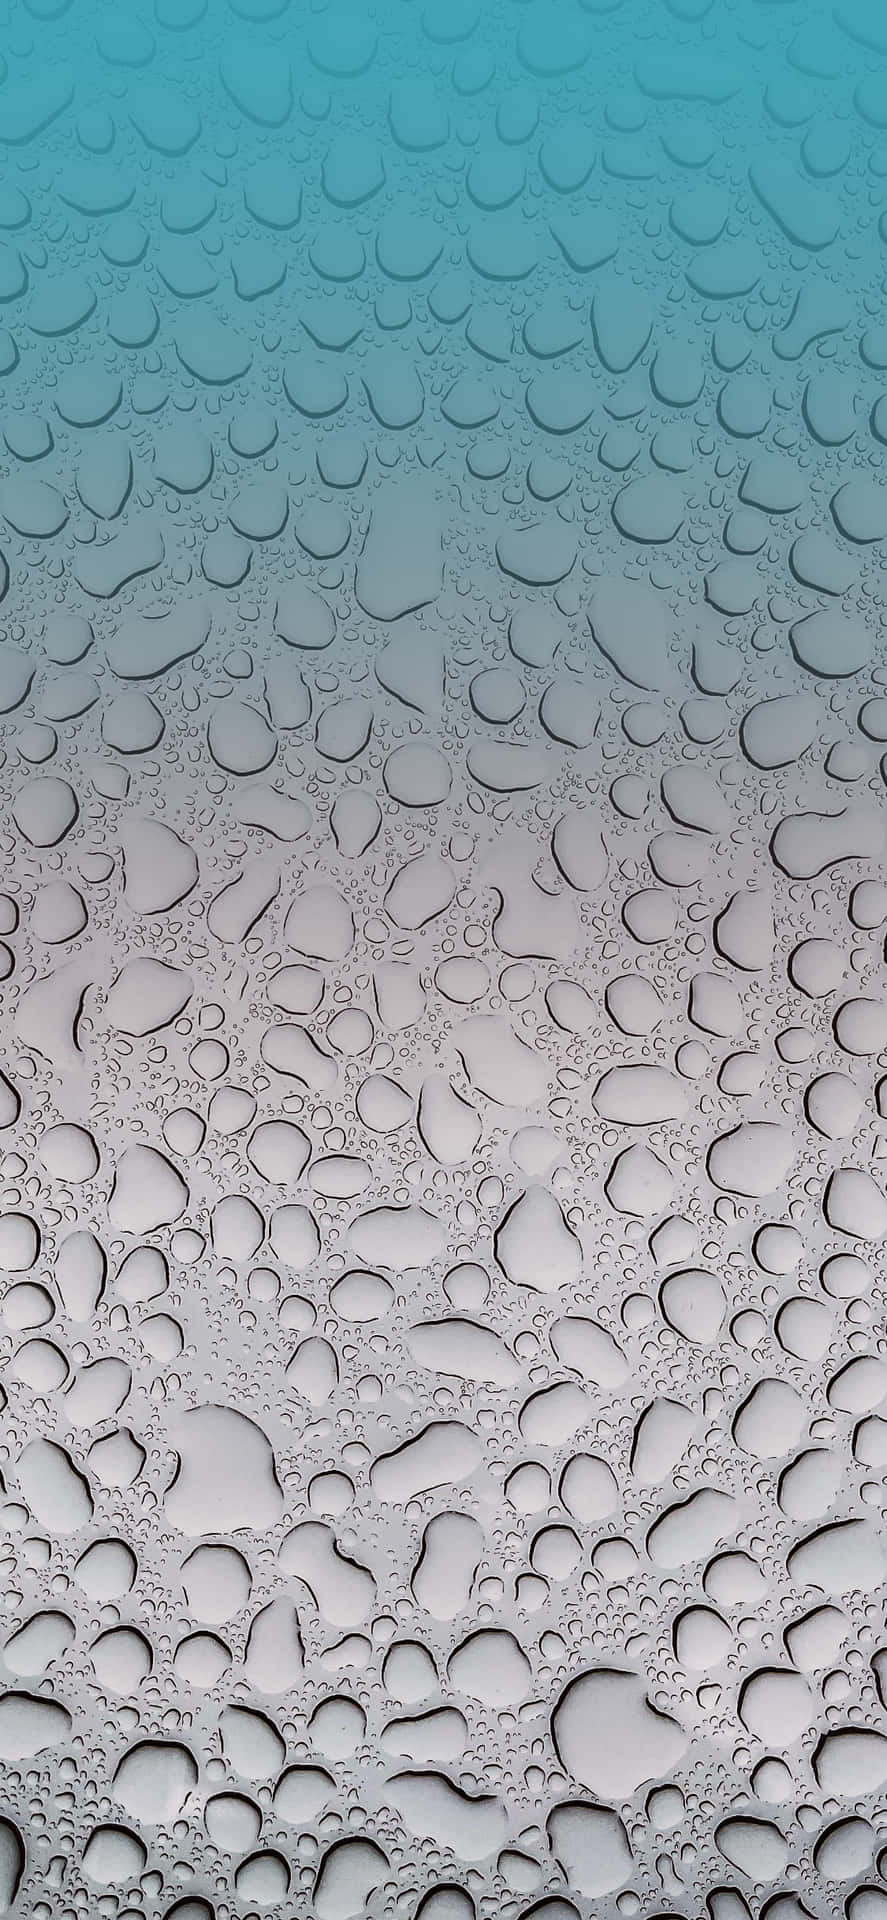 Wassertropfenauf Einer Glasoberfläche Wallpaper